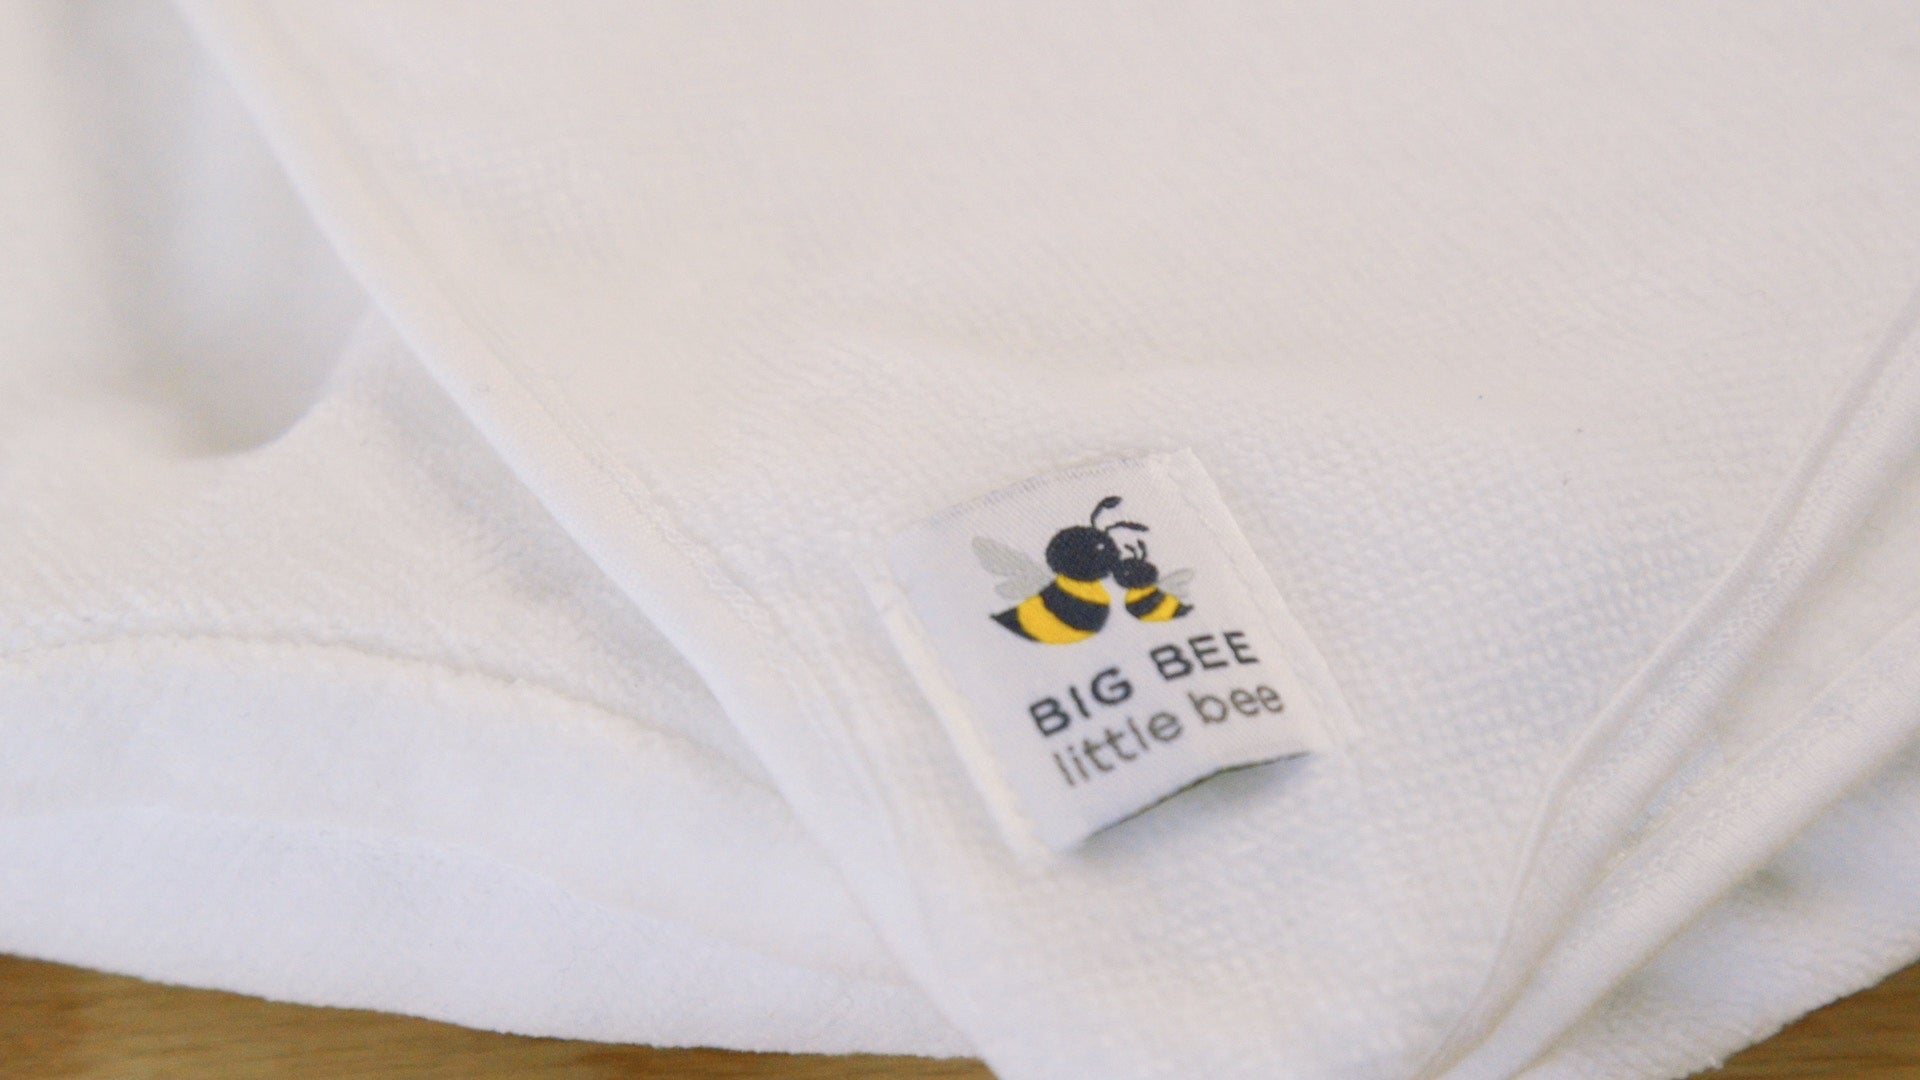 Big bee little bee